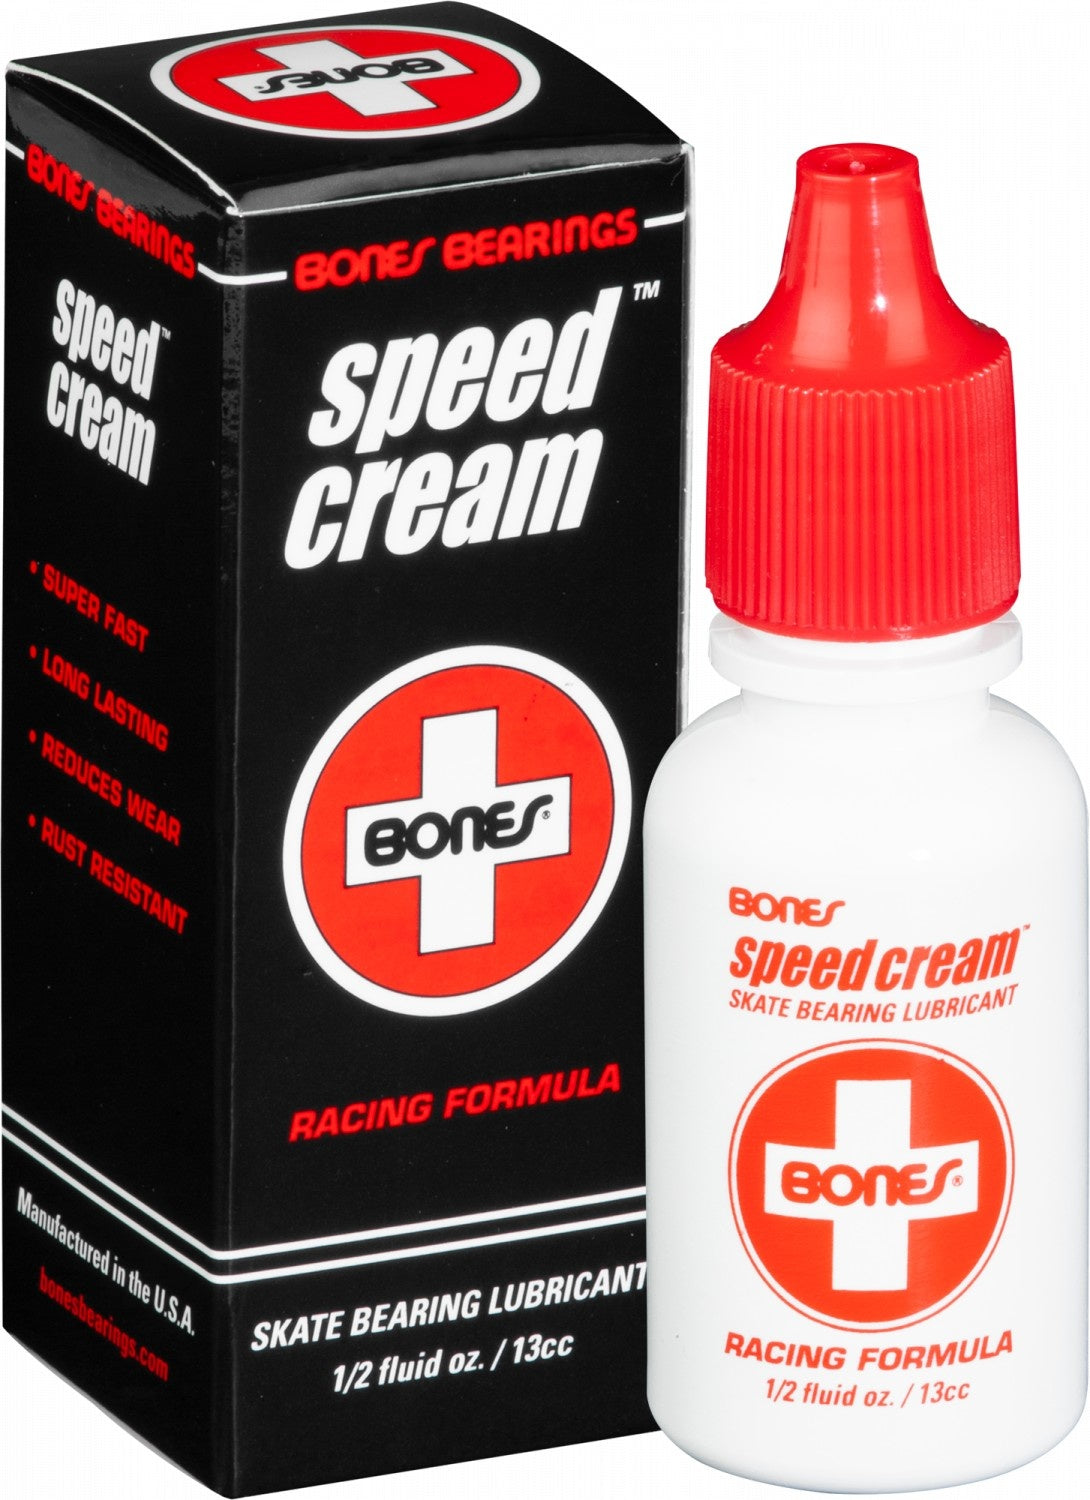 Bones Speed Cream® Lubricant 1/2 fluid oz